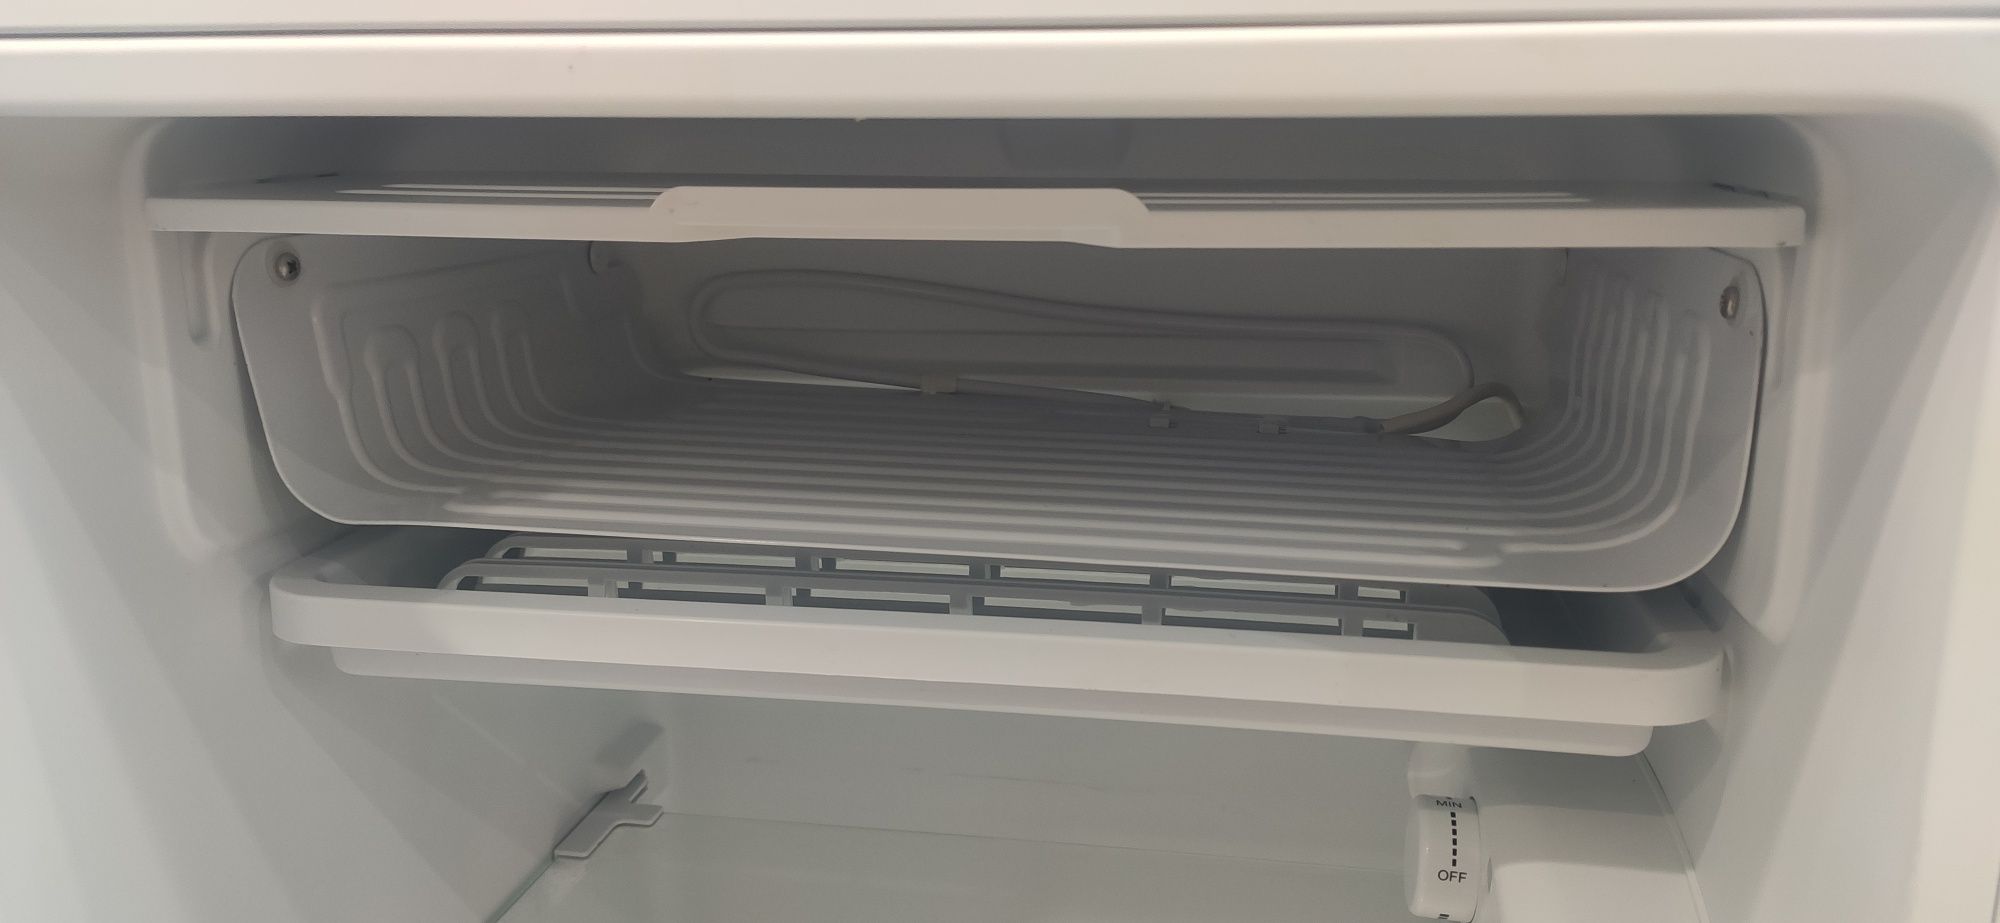 Продам холодильник однокамерный Ardesto DFM-90W